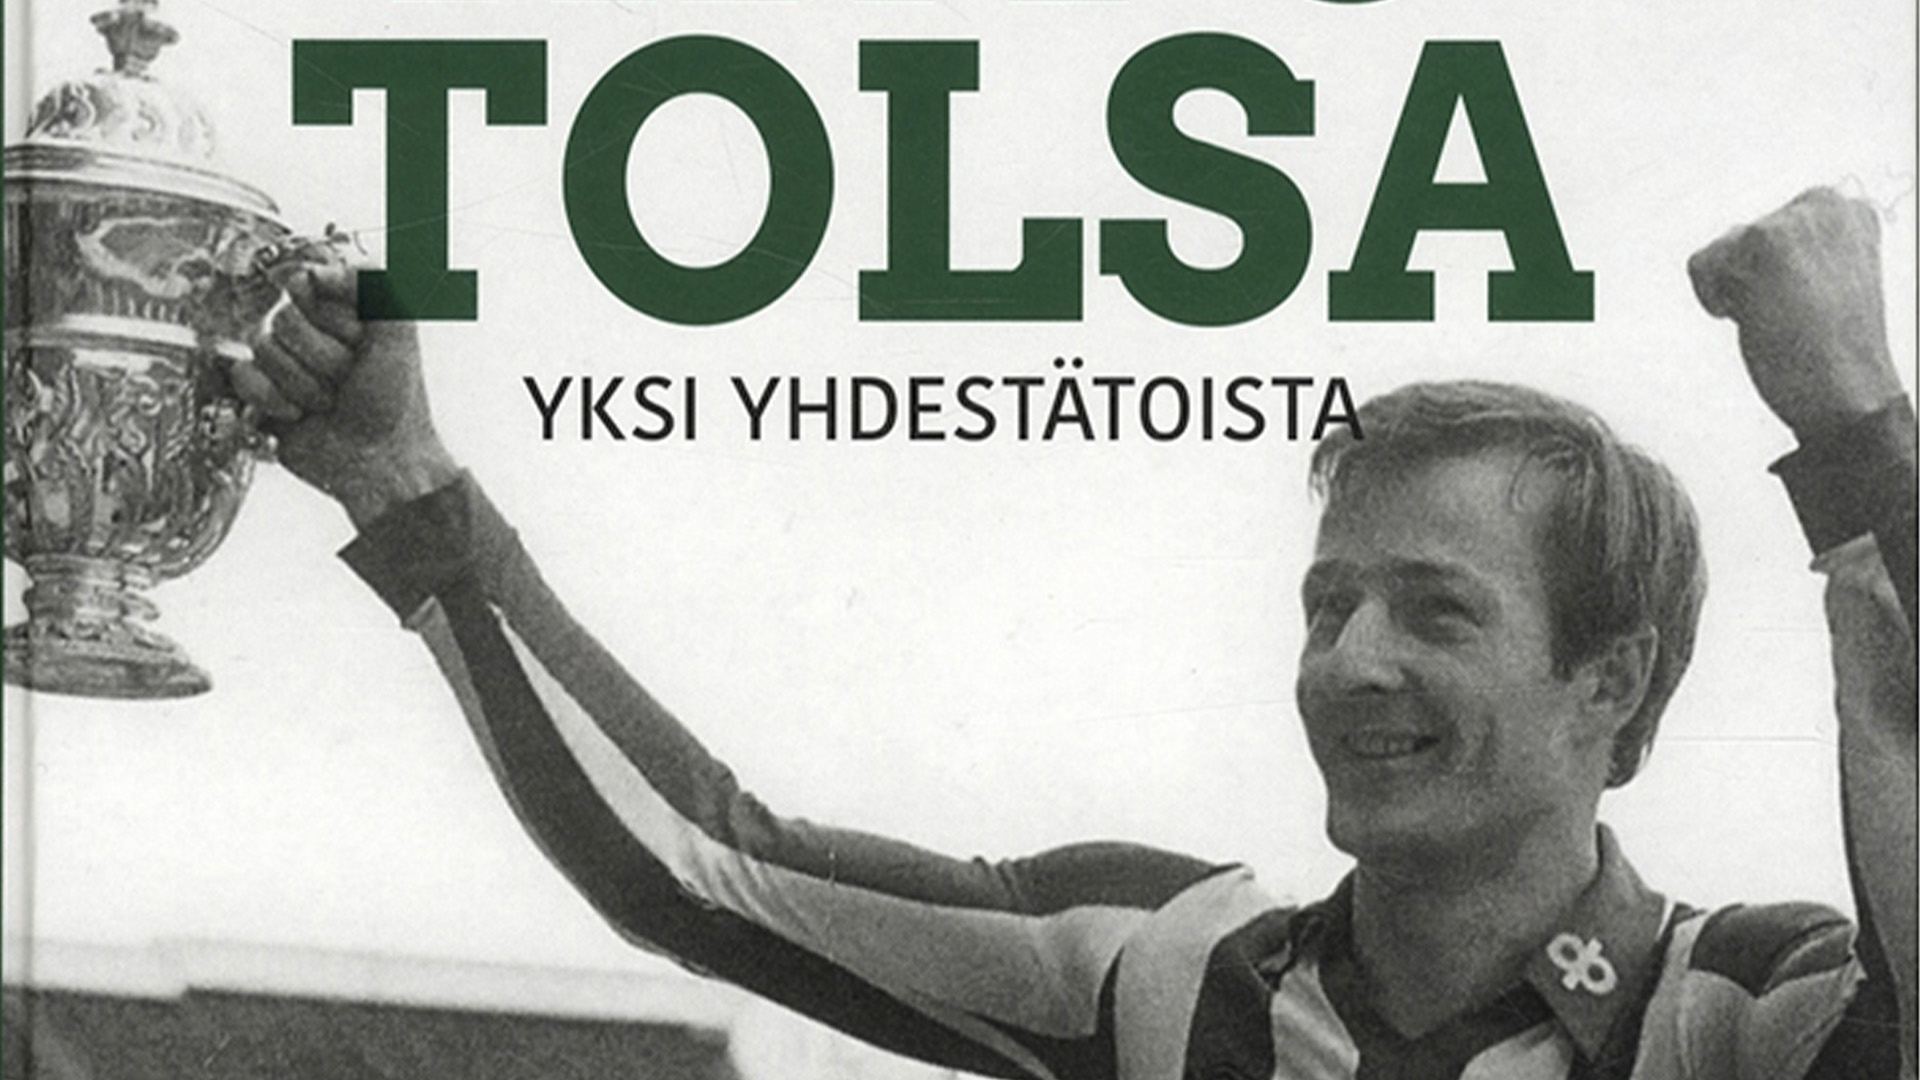 Arto Tolsa pelasi voitti yhteensä neljä cup-mestaruutta, joista kaksi Suomessa ja kaksi Belgiassa.